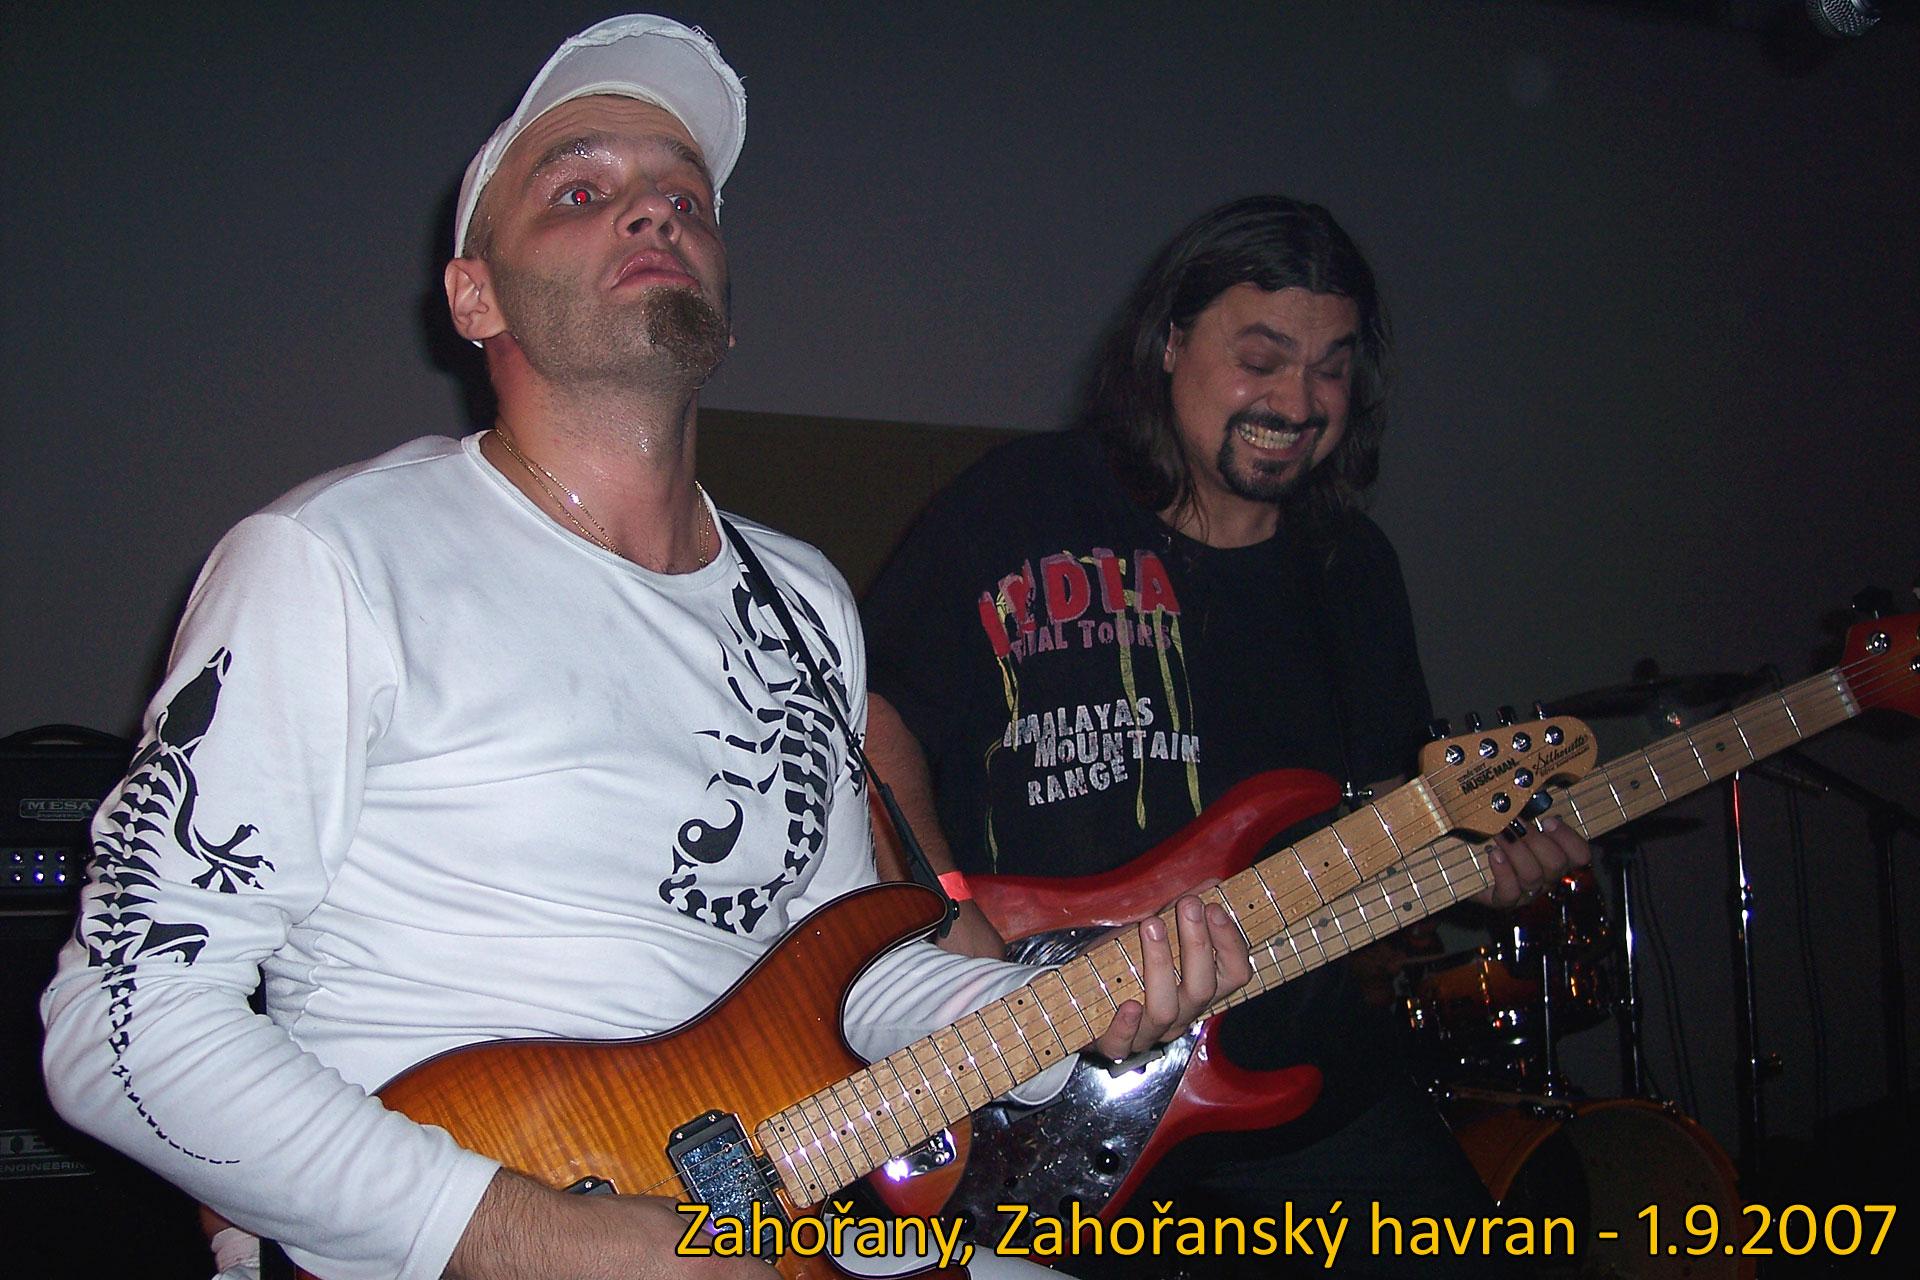 Zahořany, Zahořanský havran, 1.9.2007